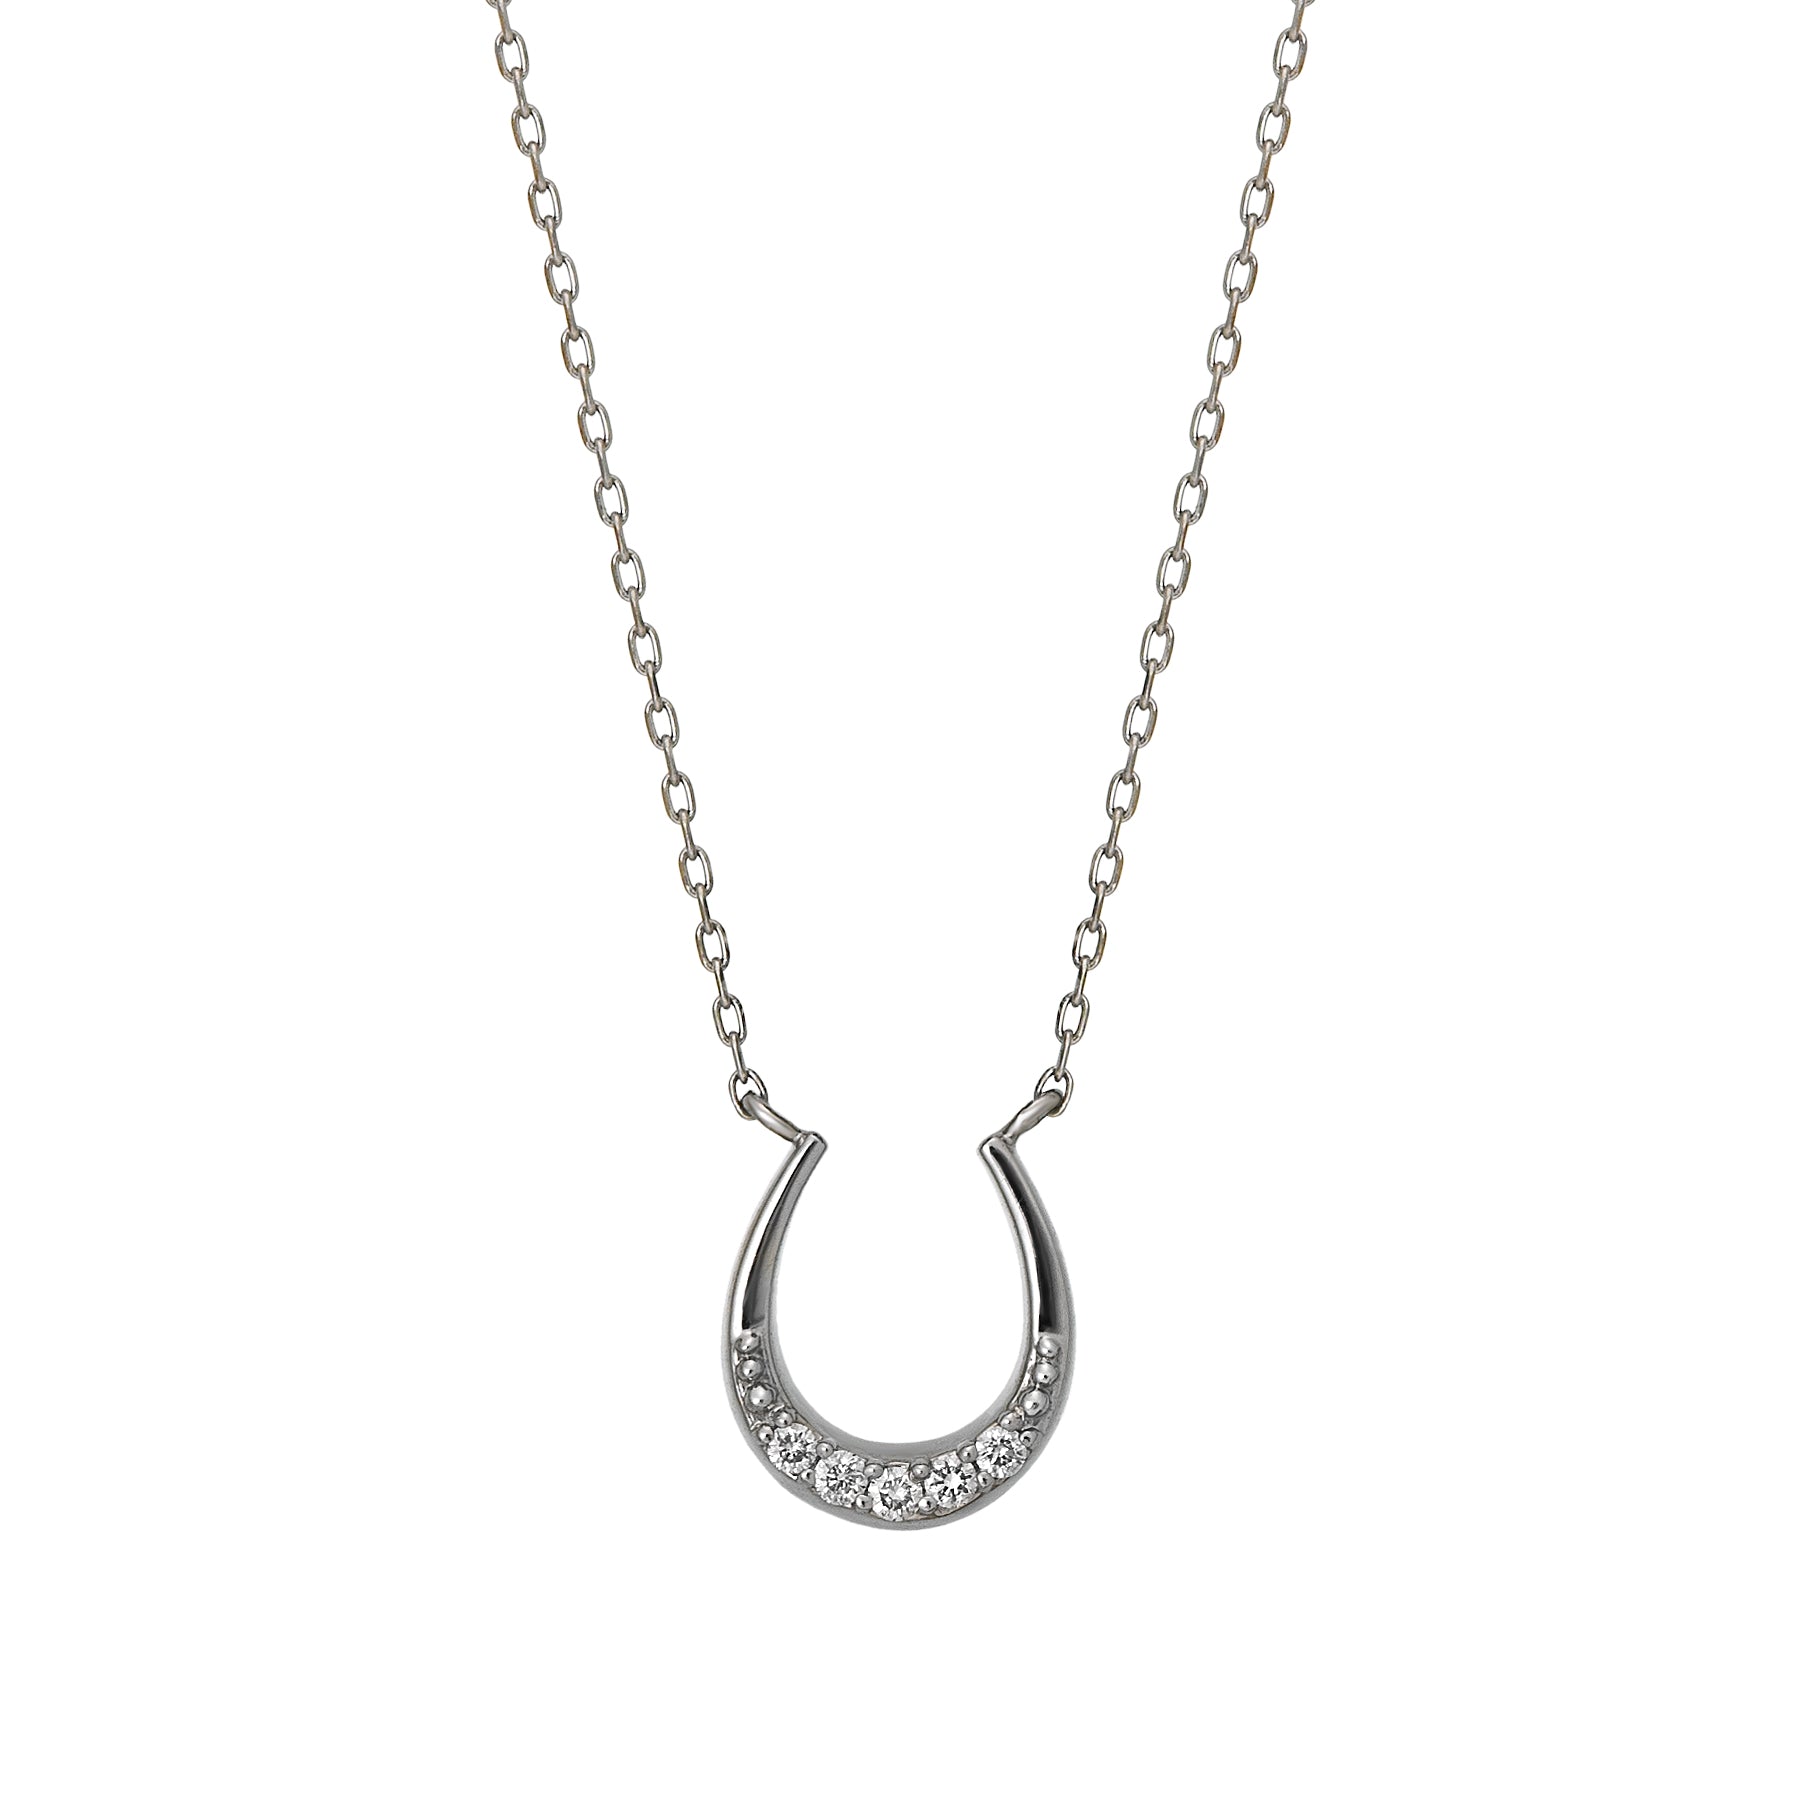 Platinum Diamond Horseshoe Necklace - Product Image